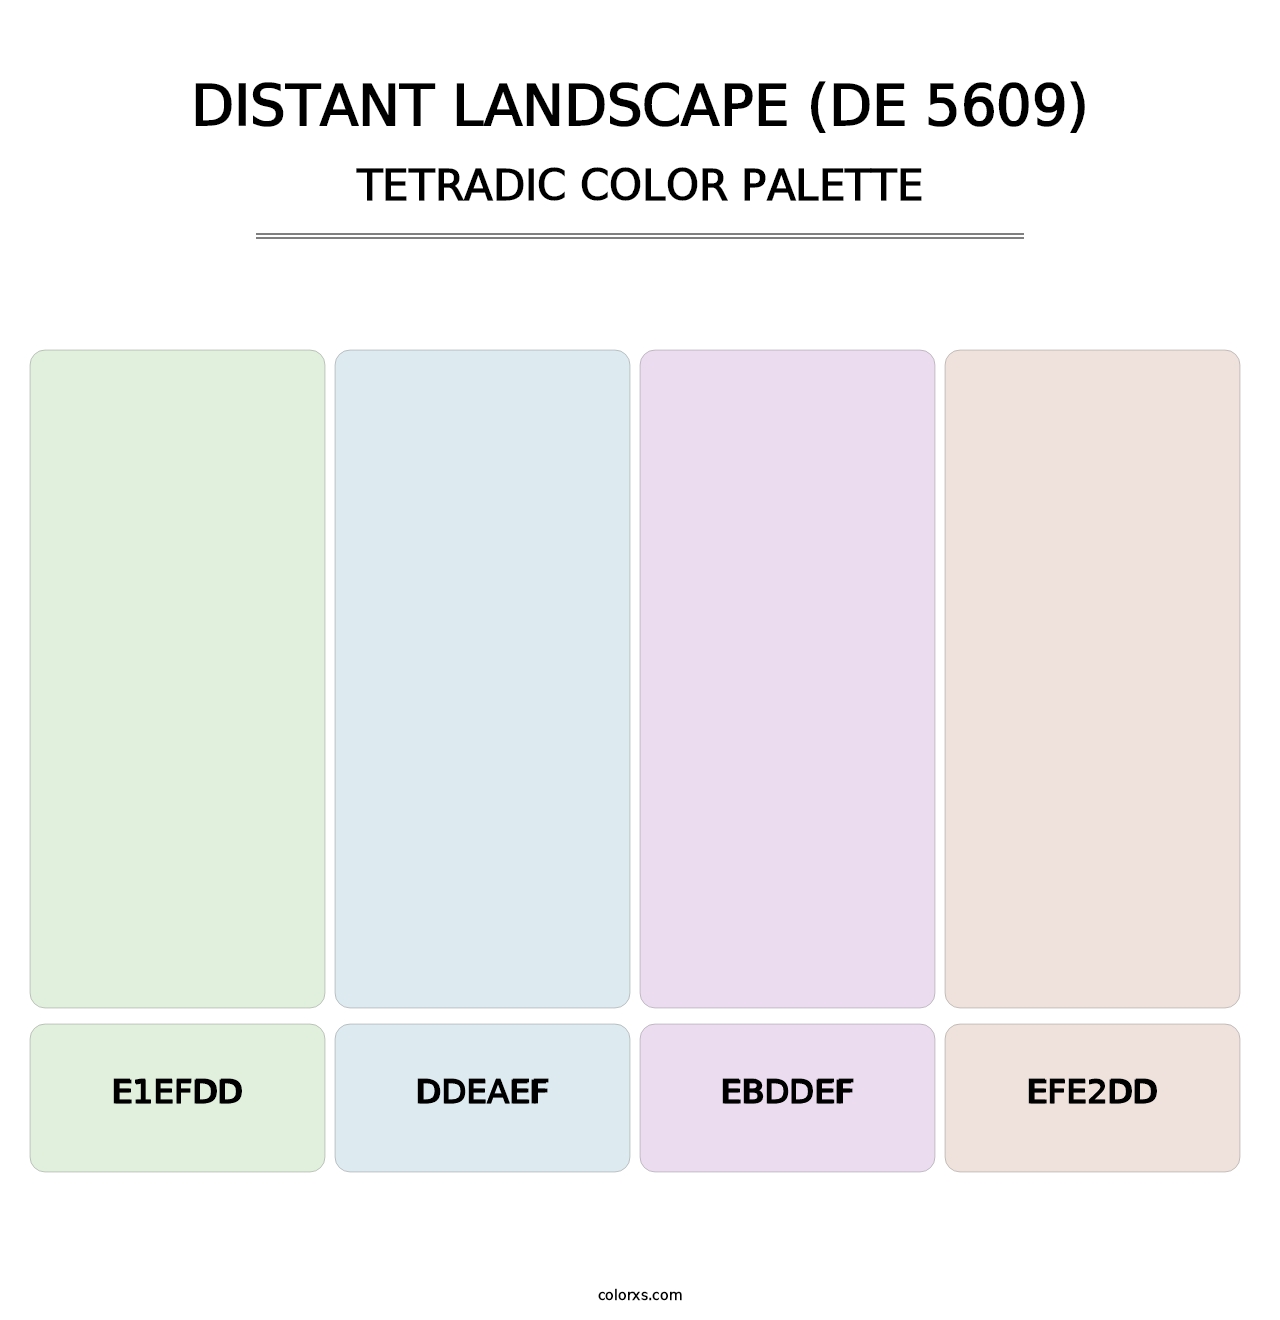 Distant Landscape (DE 5609) - Tetradic Color Palette